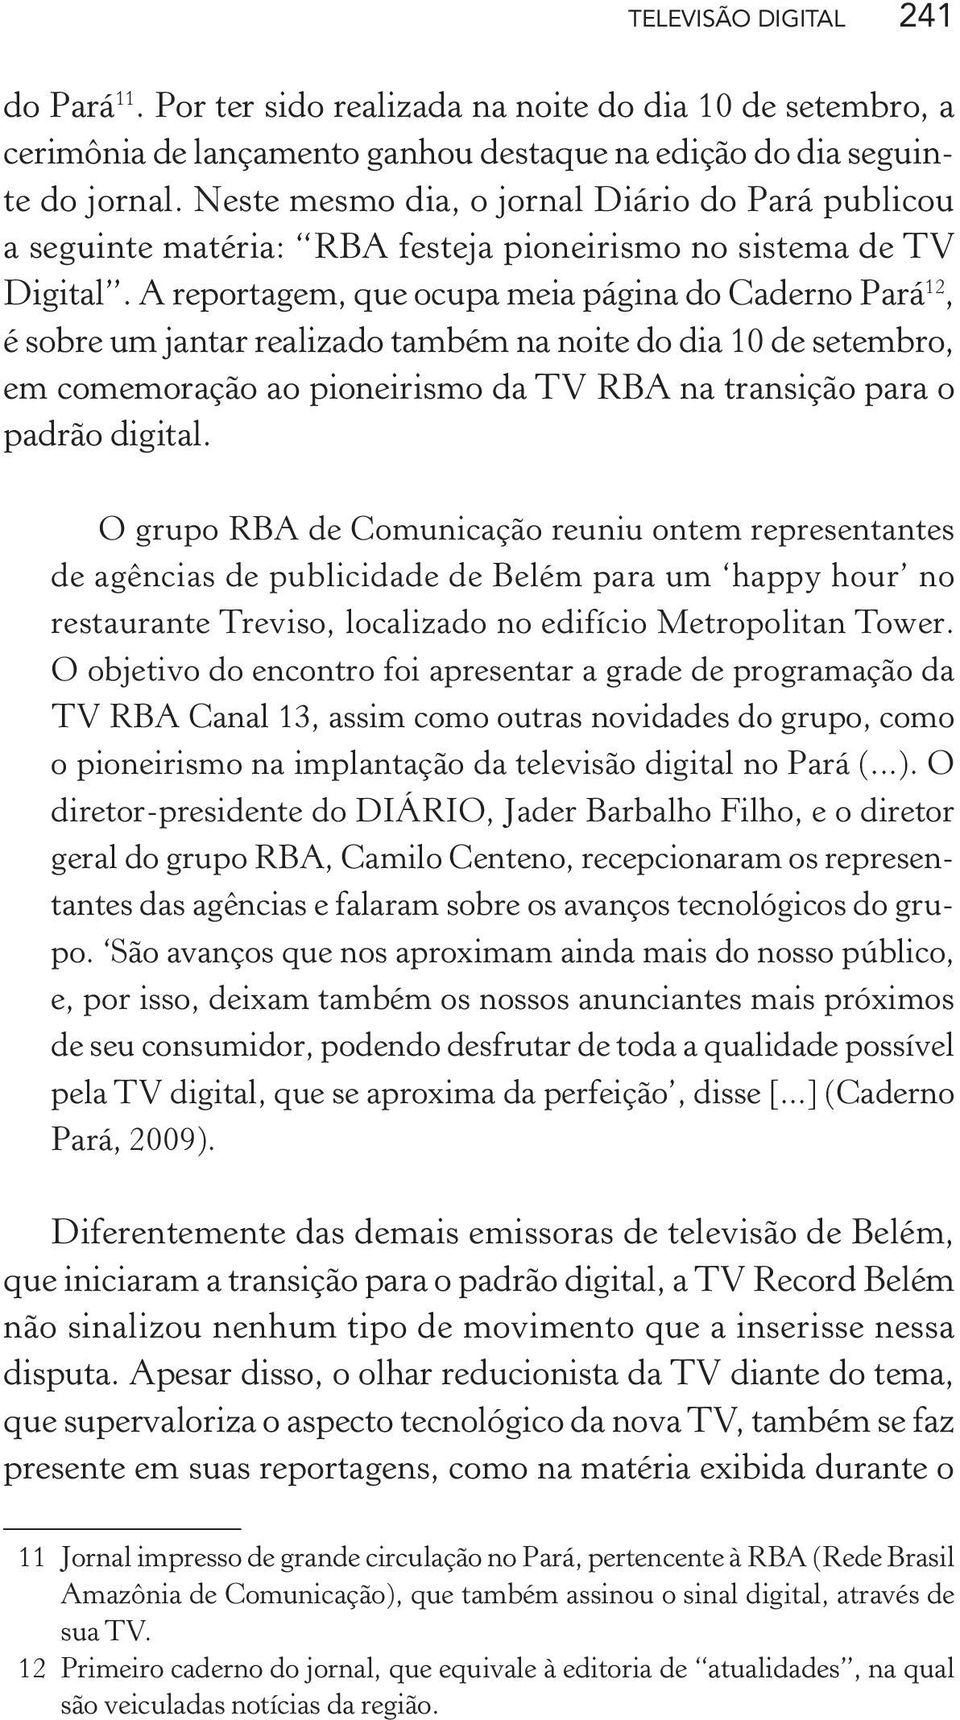 A reportagem, que ocupa meia página do Caderno Pará 12, é sobre um jantar realizado também na noite do dia 10 de setembro, em comemoração ao pioneirismo da TV RBA na transição para o padrão digital.